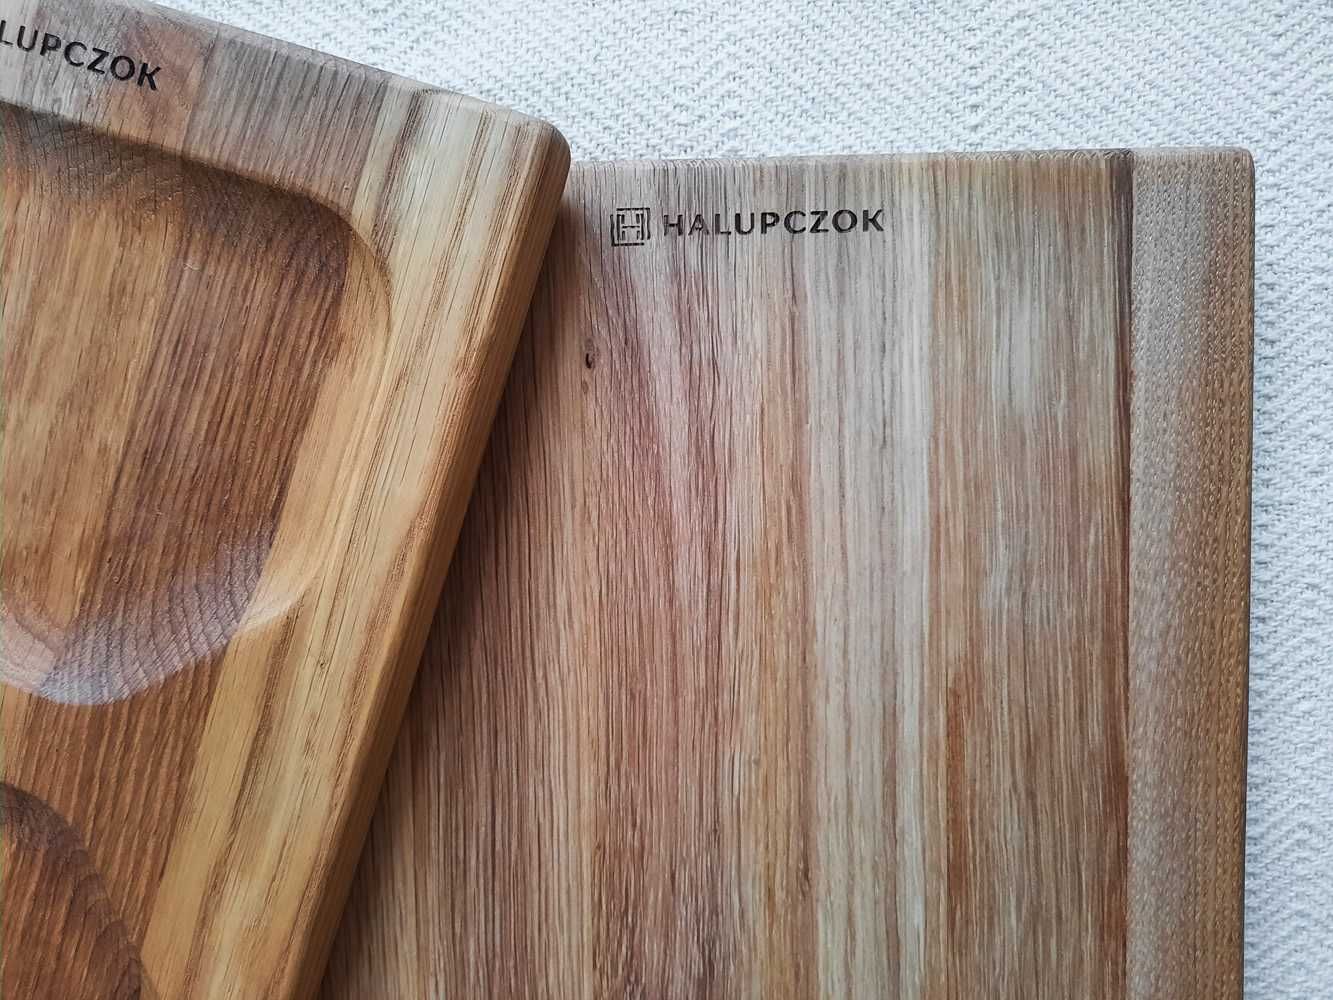 Drewniane deski do serwowania i krojenia, Halupczok, nowe